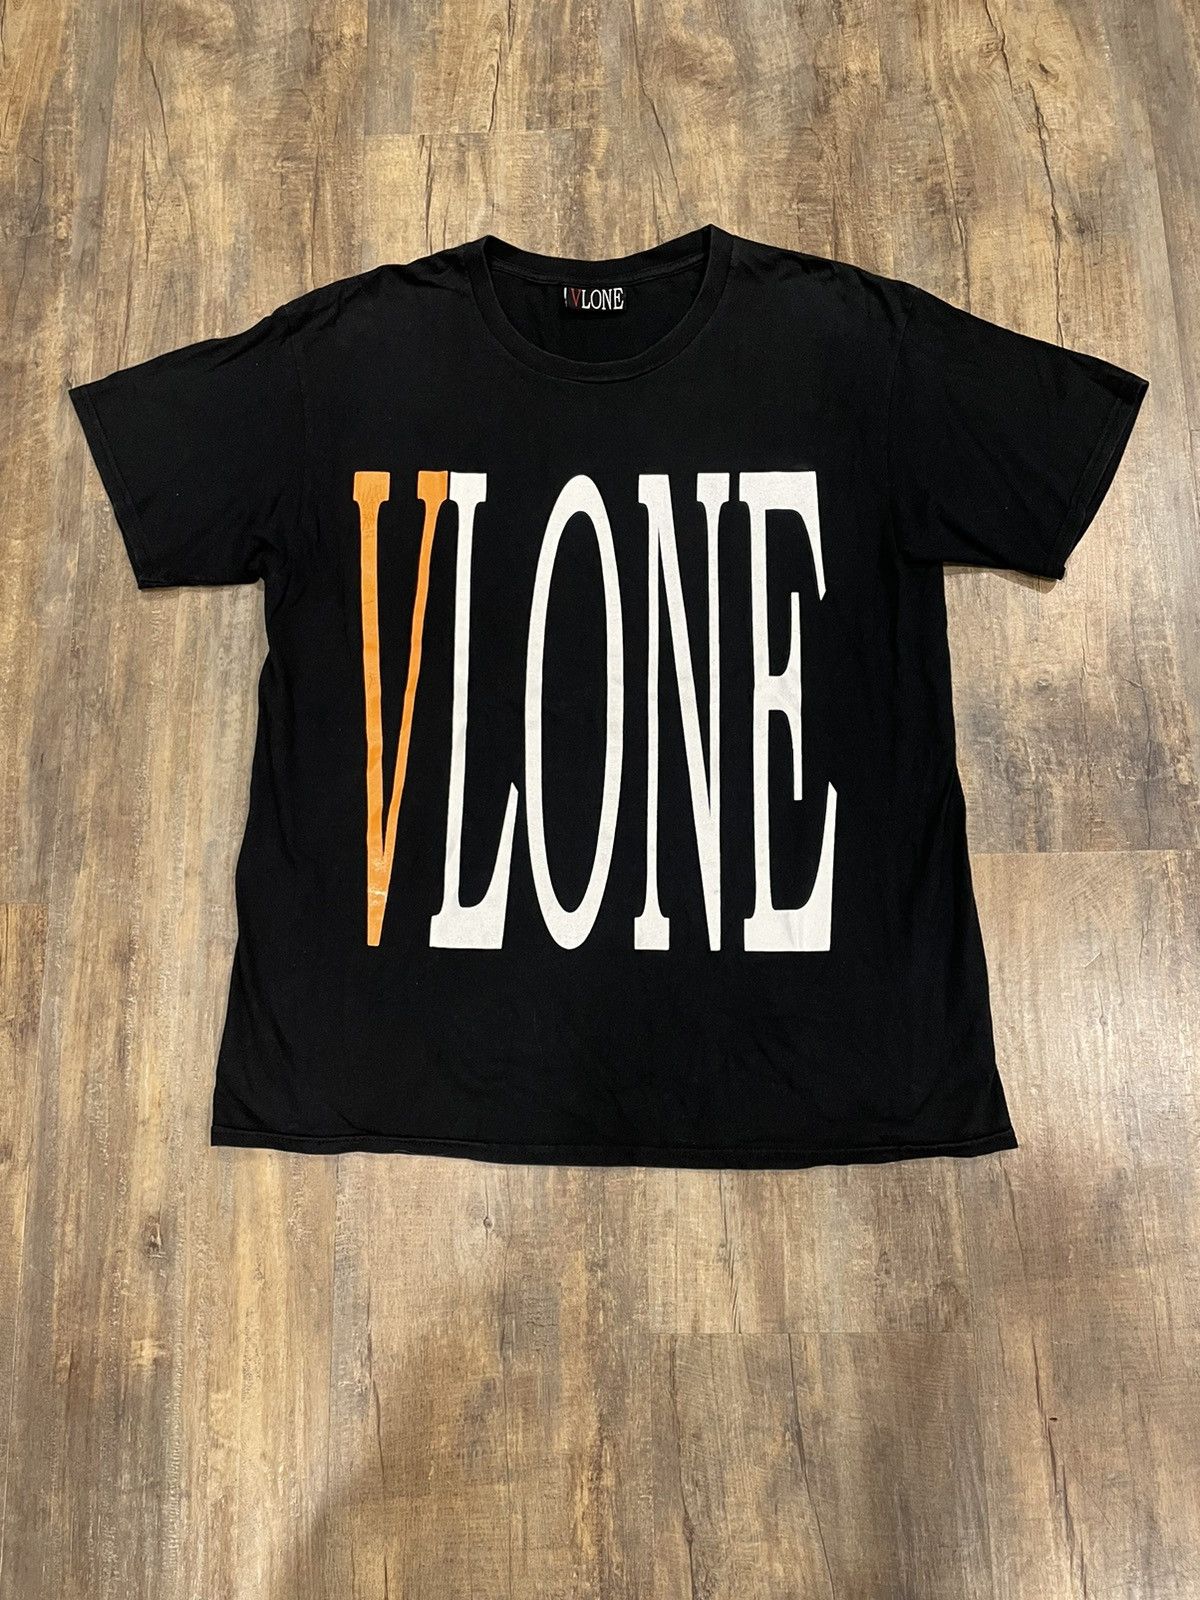 Vlone RARE Vlone Staple Orange Logo Black Tee Spell Out OG | Grailed